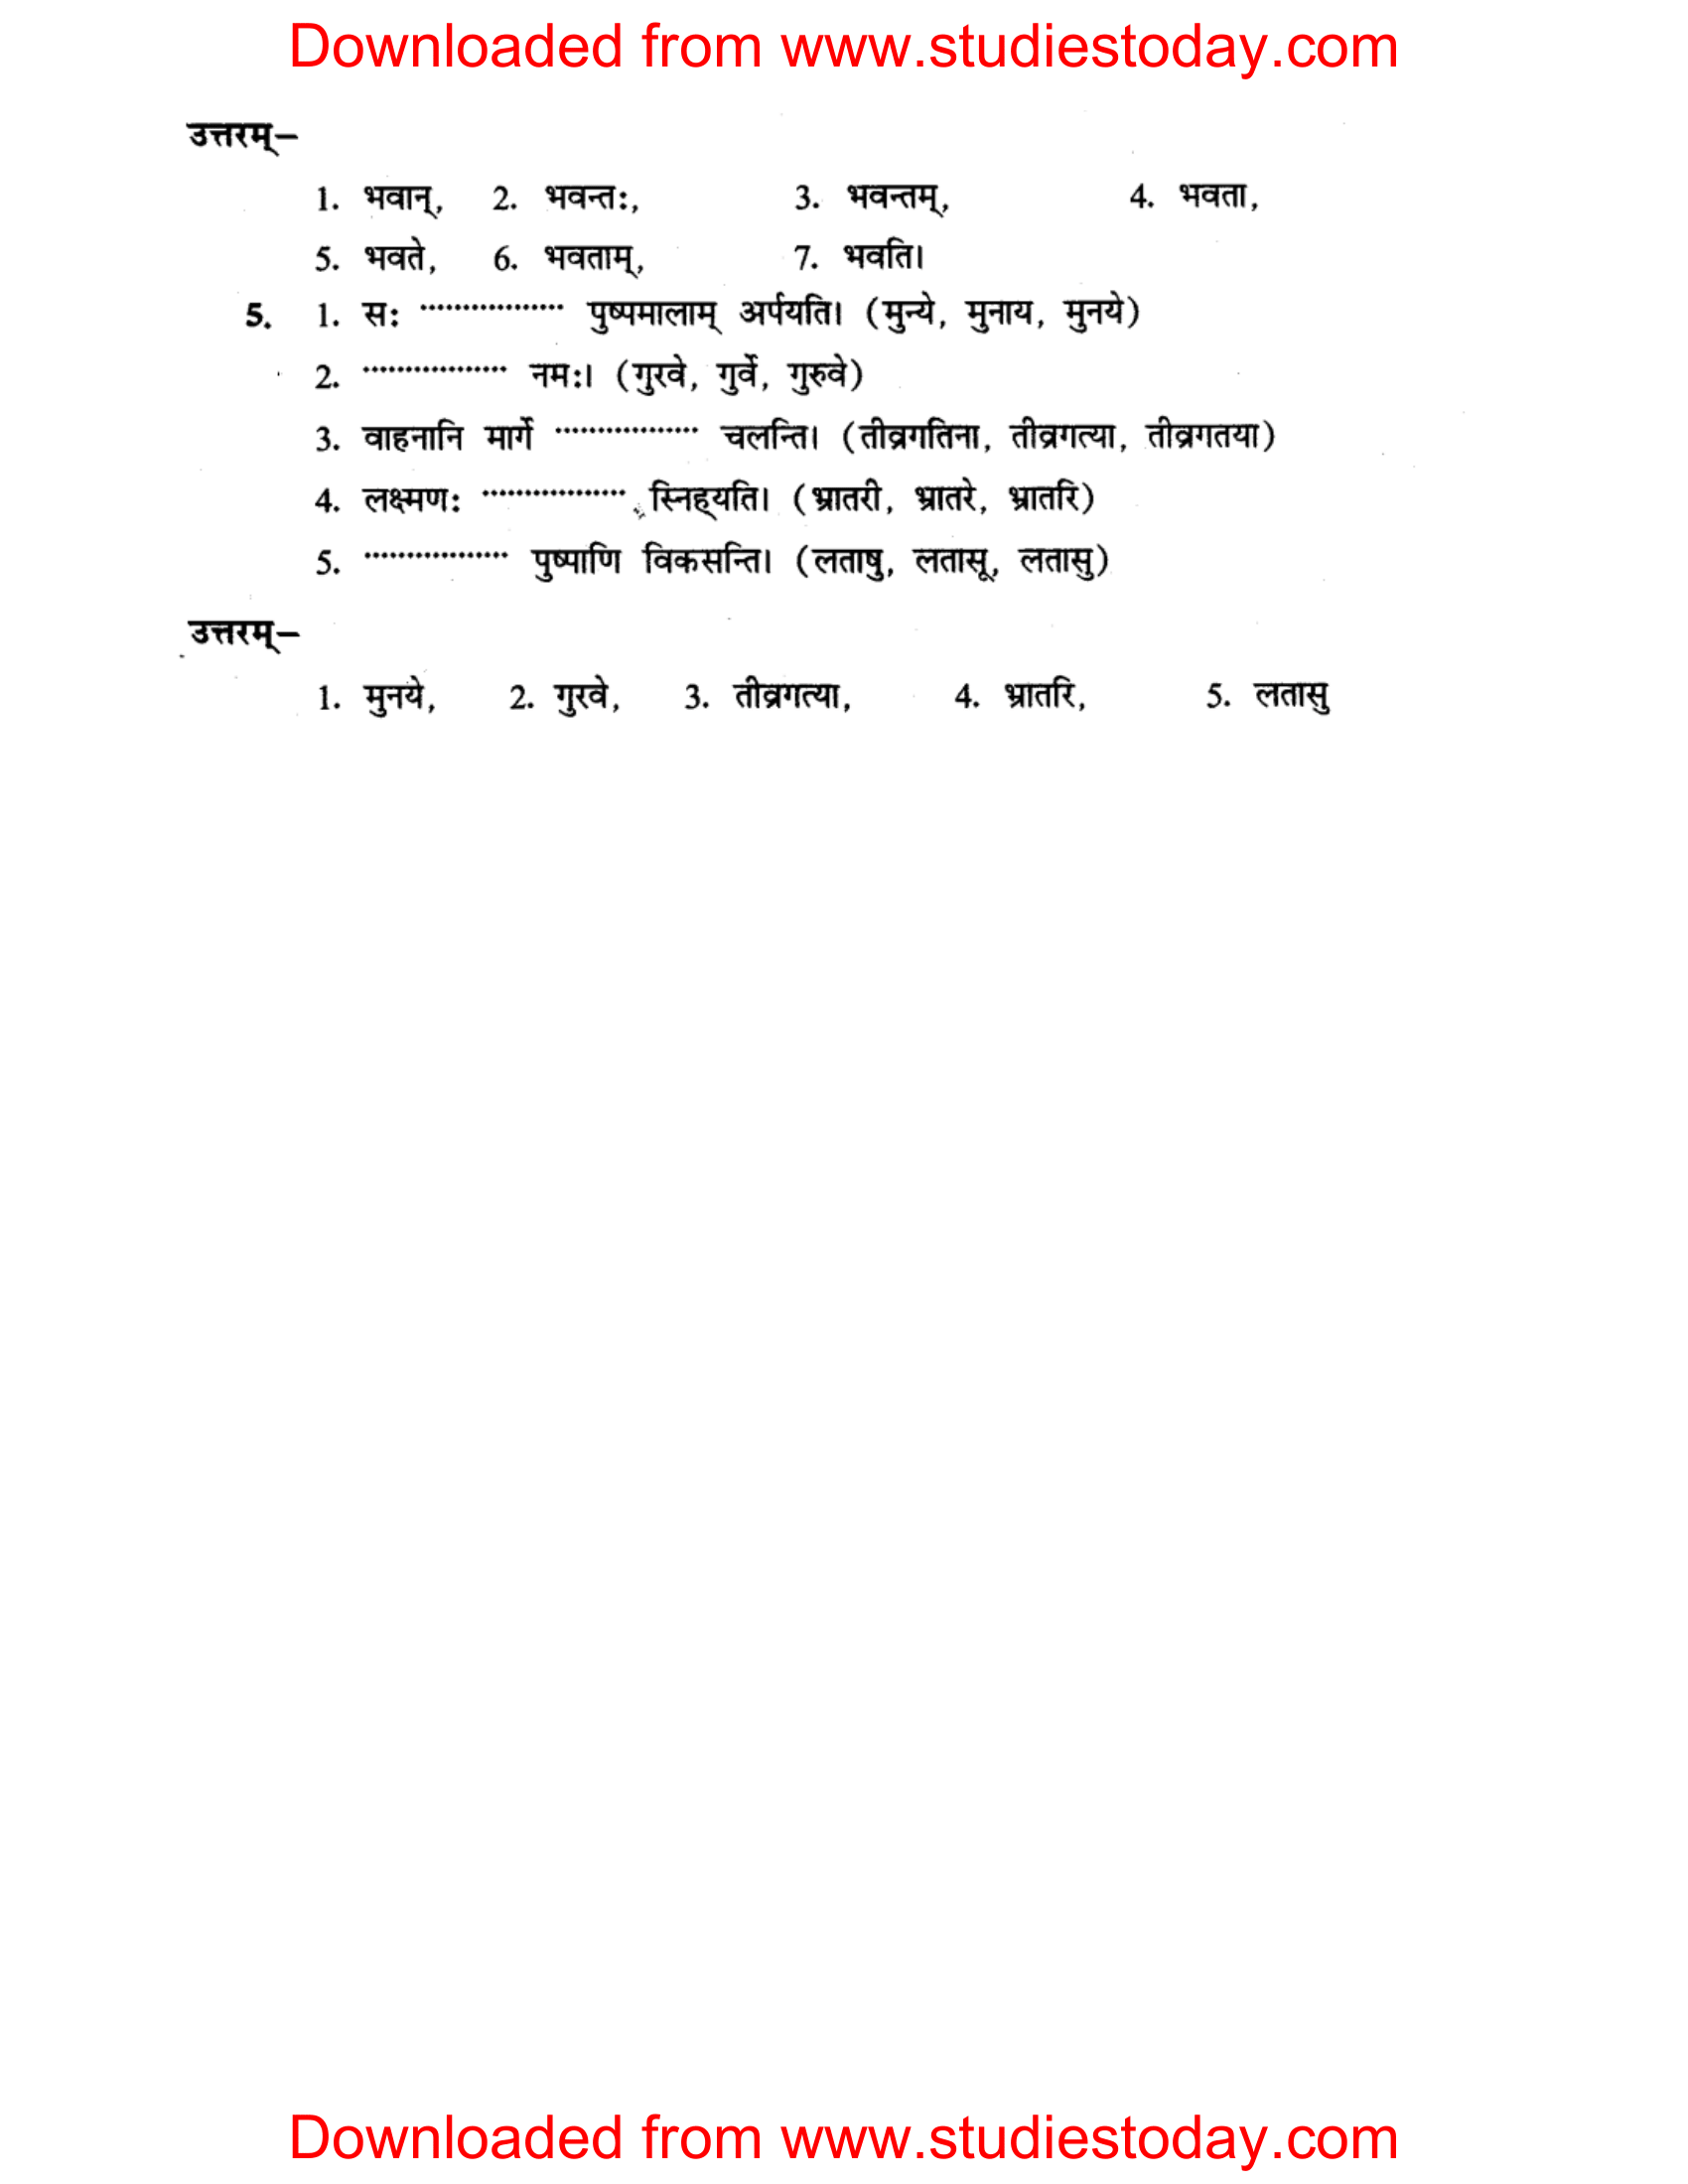 ncert-solutions-class-8-sanskrit-chapter-4-shabdrupani-abhyas-4